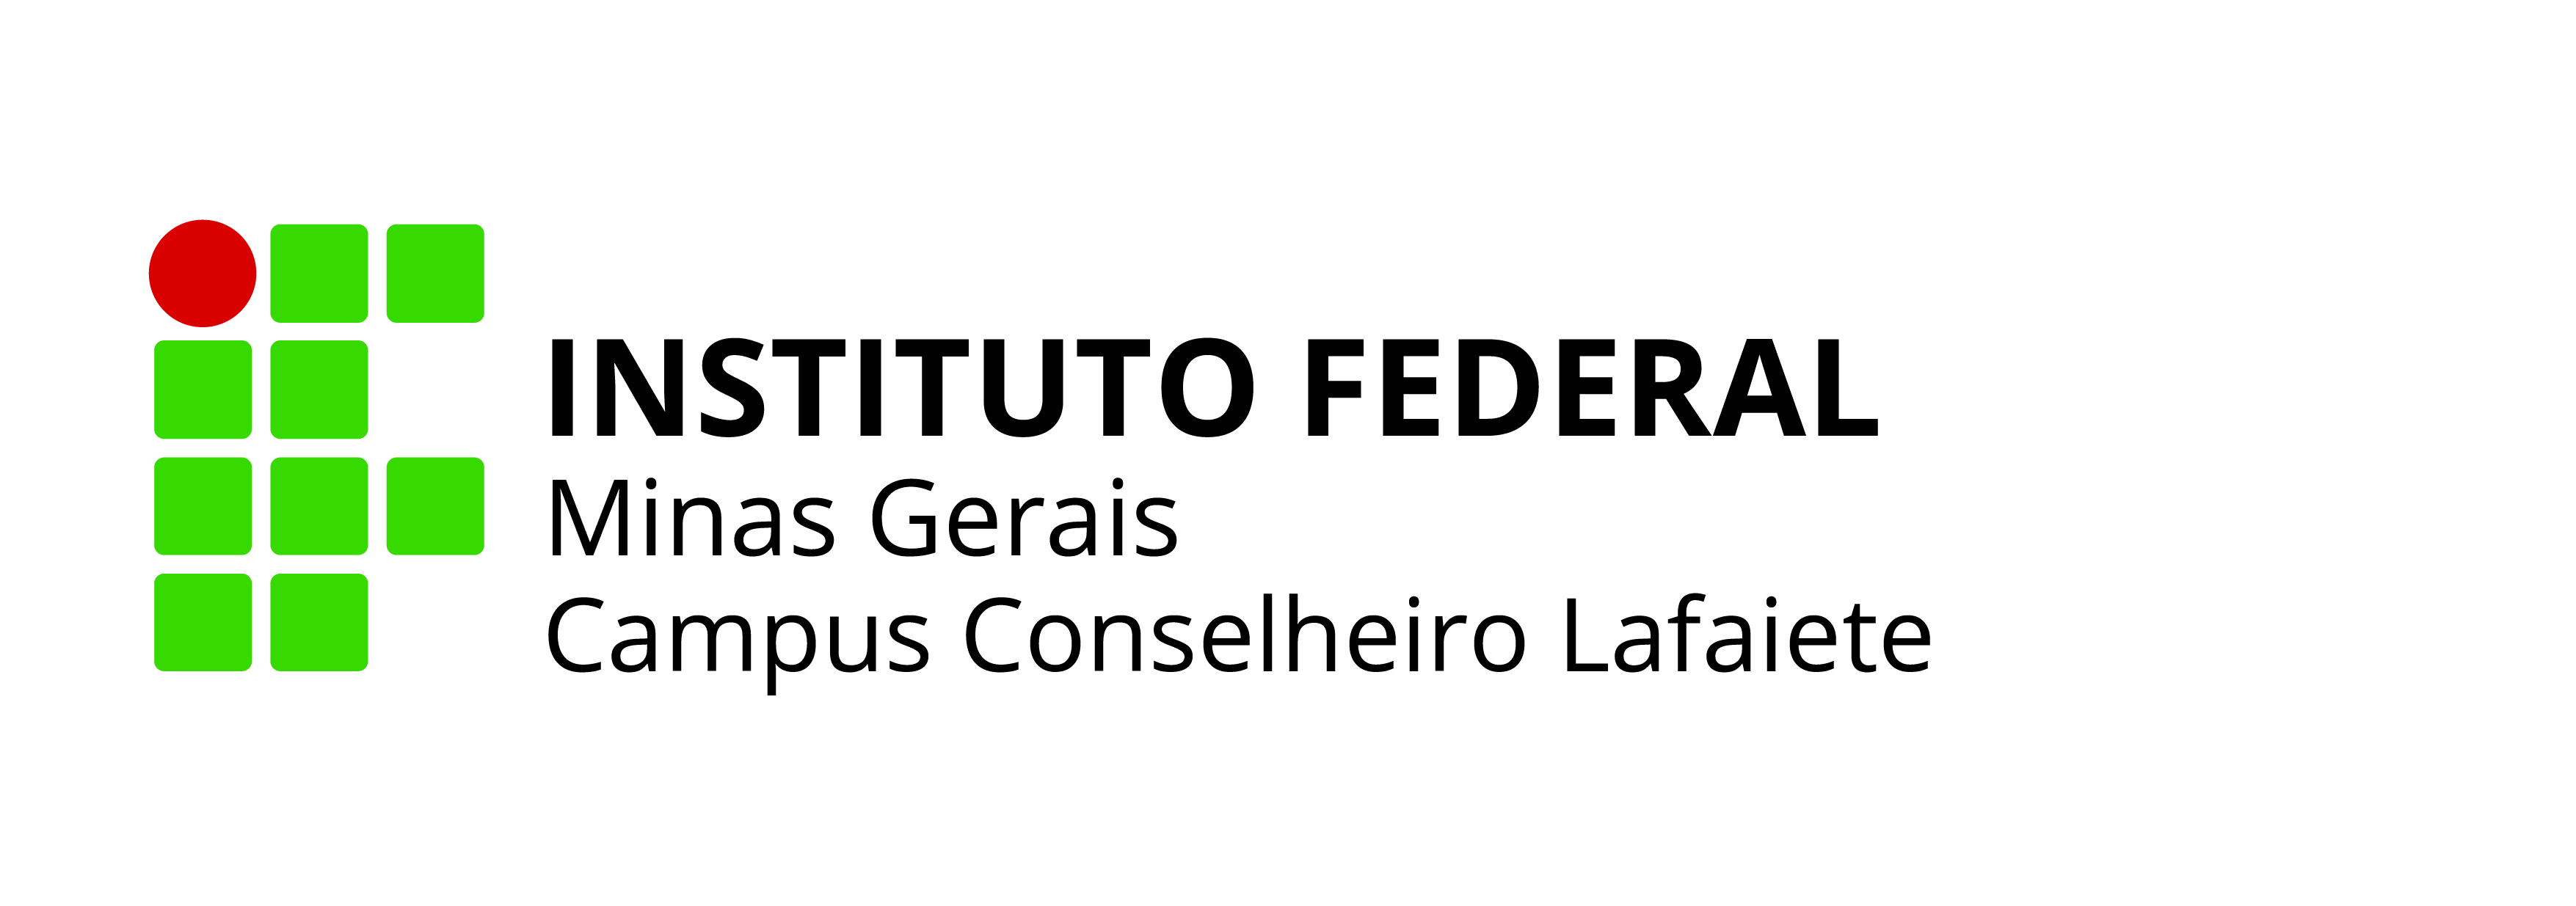 IFMG_Conselheiro Lafaiete_Horizontal .jpg